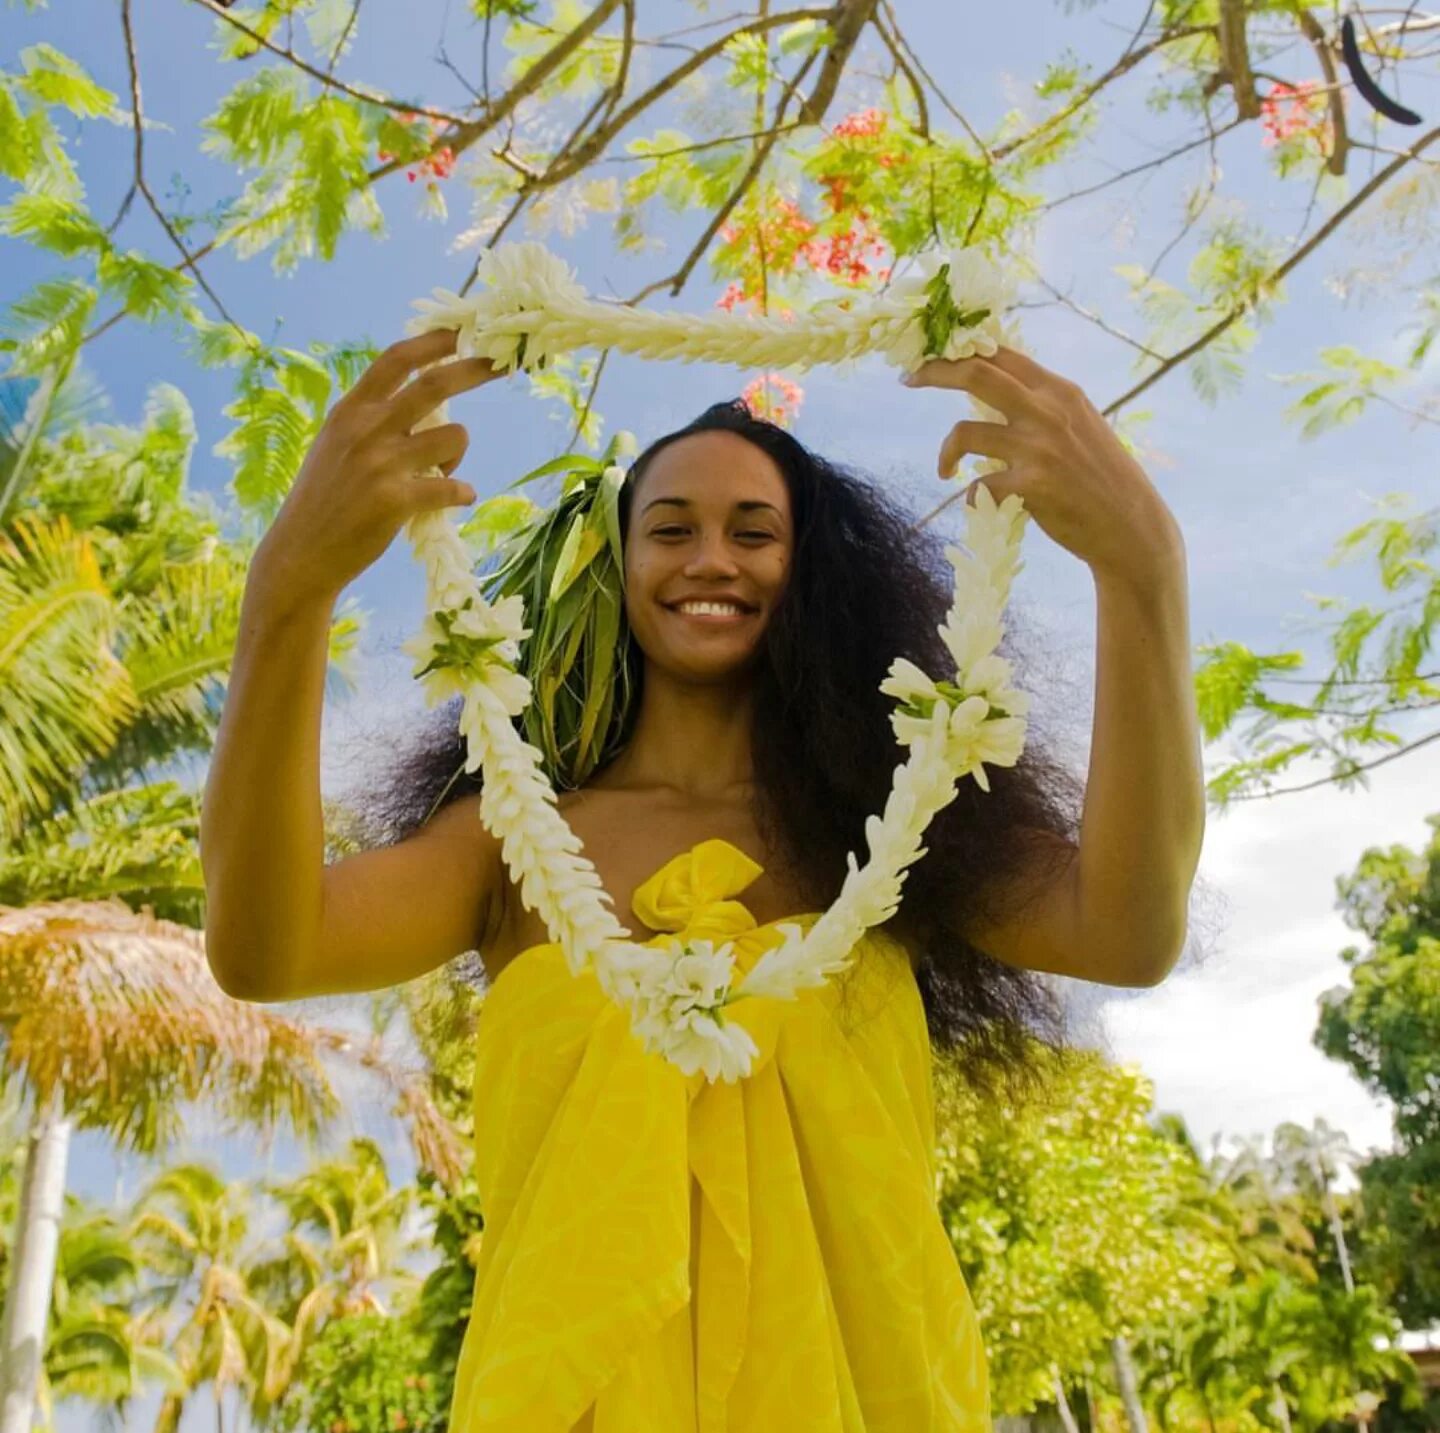 Alloha welcomes you что это. Таити и таитянки. Красивые девушки Гавайи. Женщина в тропиках. Гавайские острова девушки.